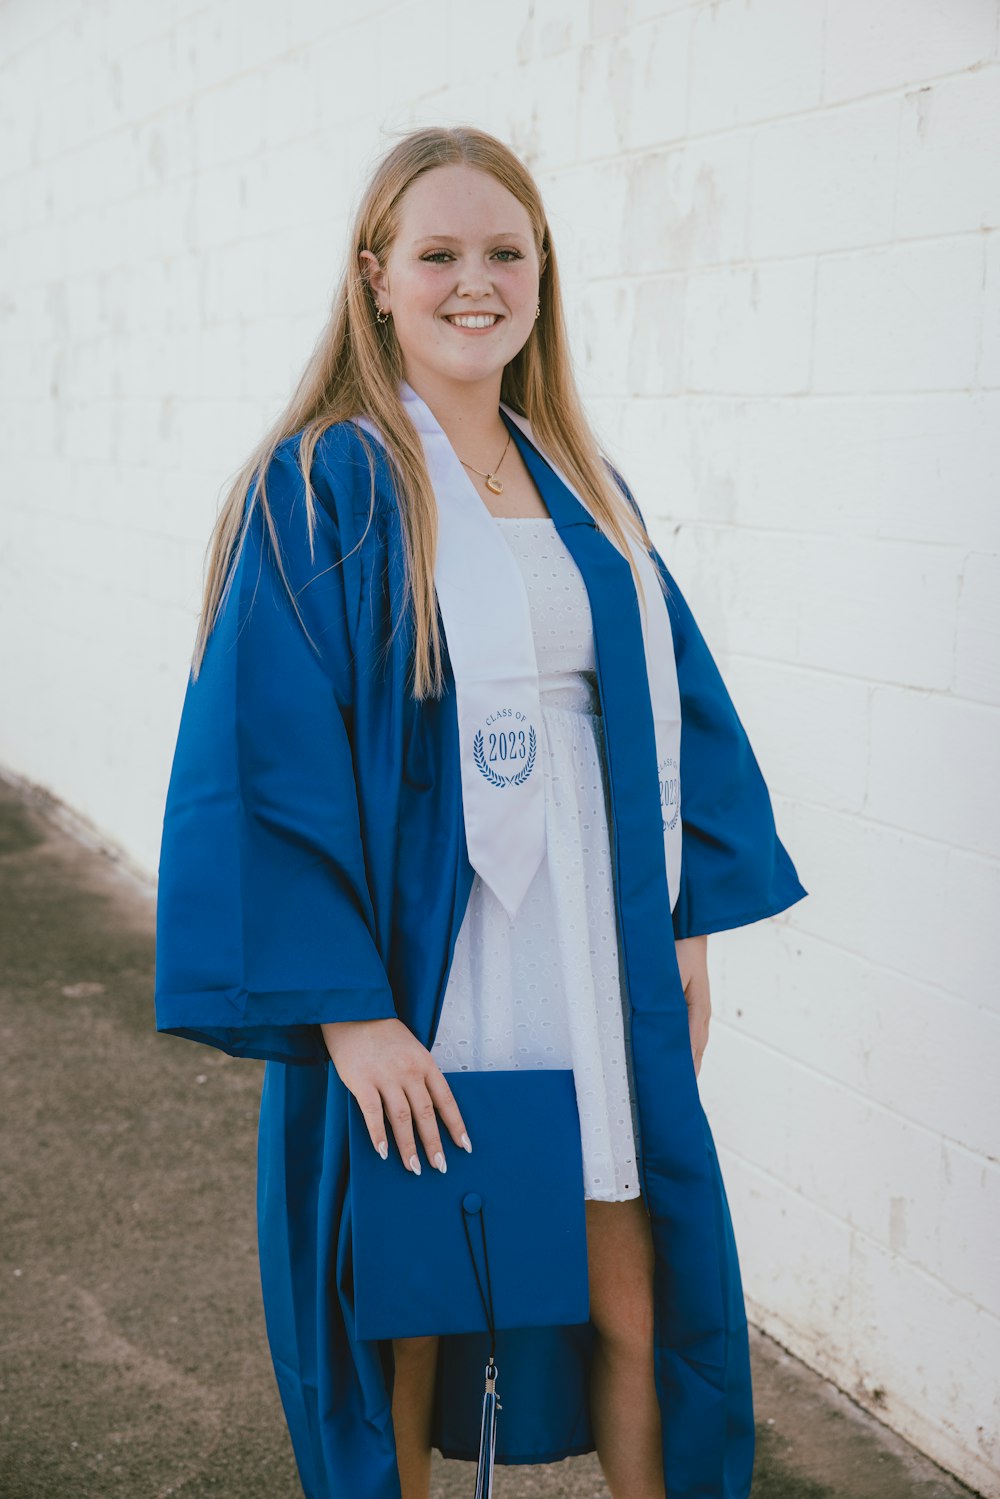 Une femme en robe de graduation bleue posant pour une photo